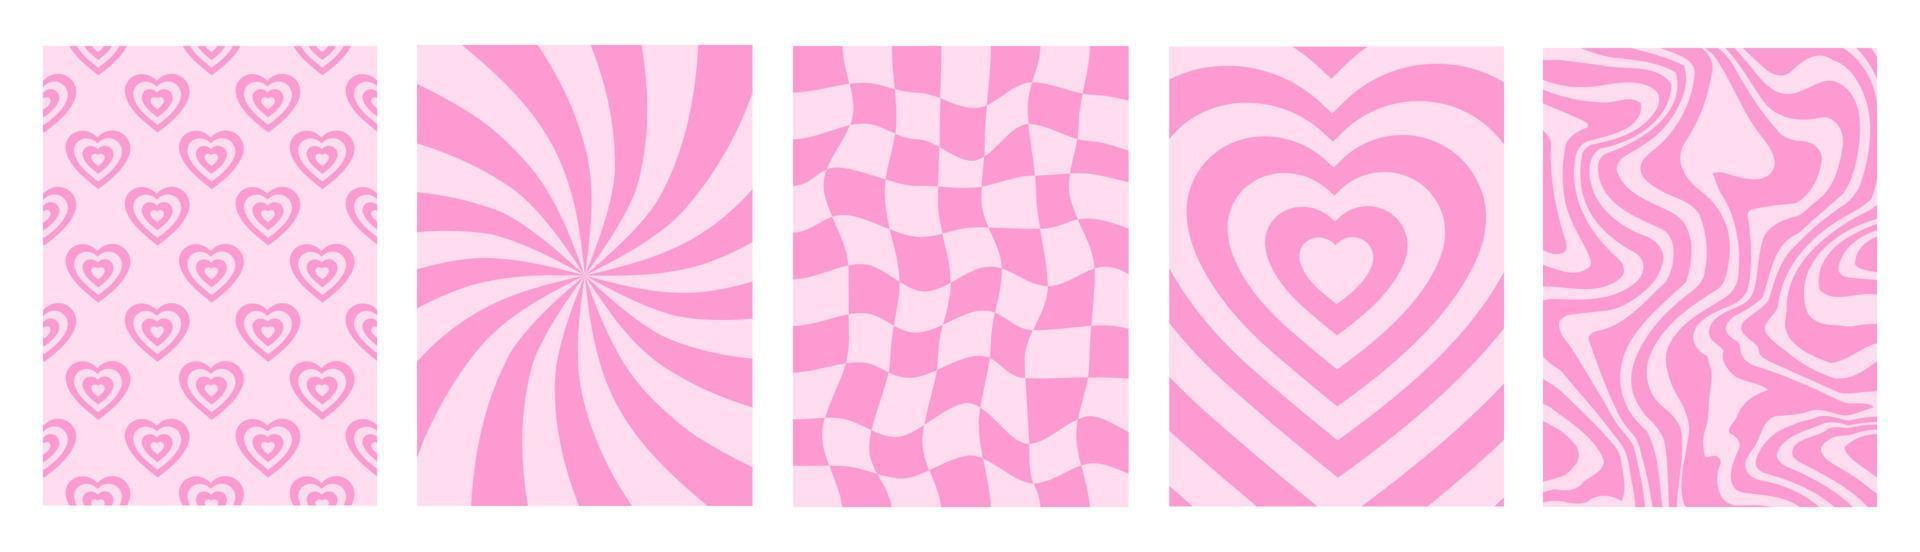 Groovy romantico impostato verticale sfondi nel stile retrò anni '60, anni '70. contento san valentino giorno saluto carta. vettore illustrazione. rosa colori